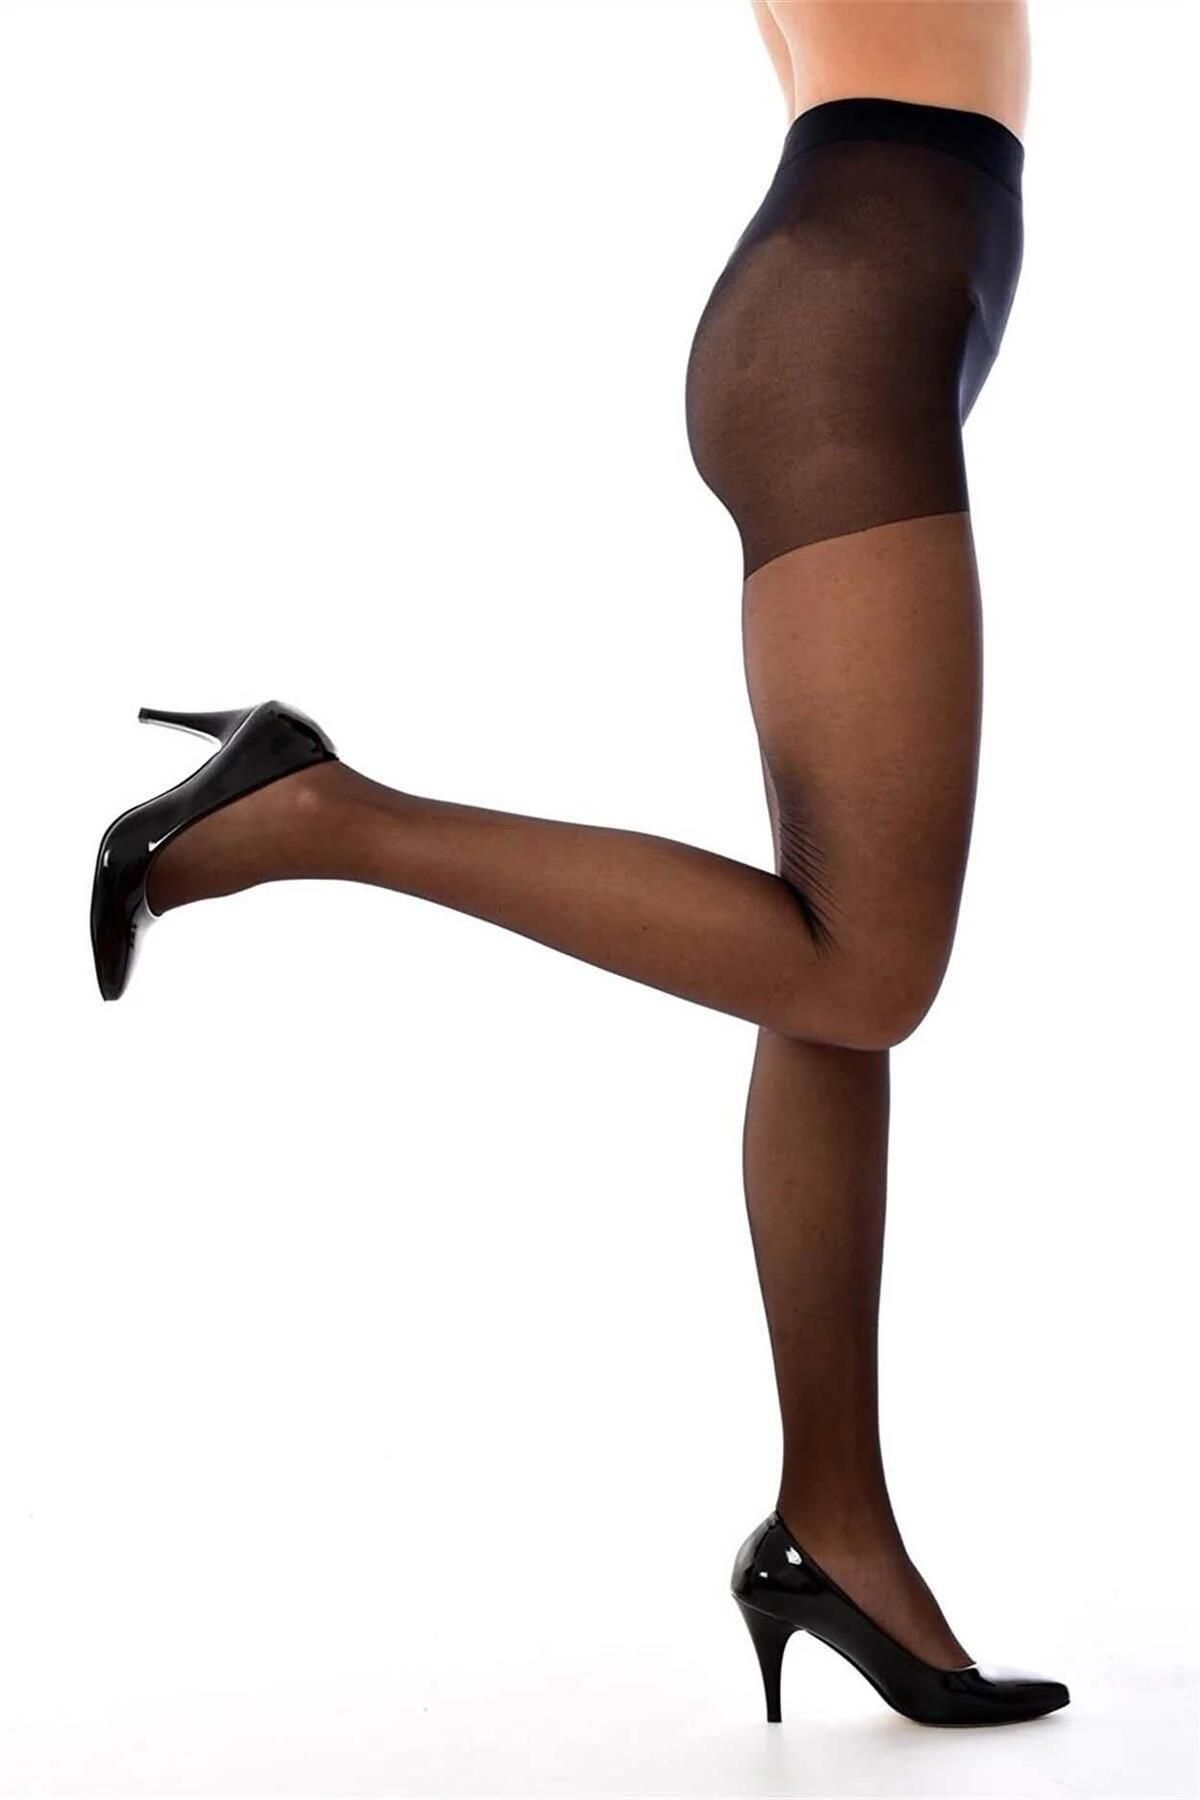 Müjde Kadın Külotlu Çorap 20 Den Ince Burnu Takviyeli Dayanıklı Mat -